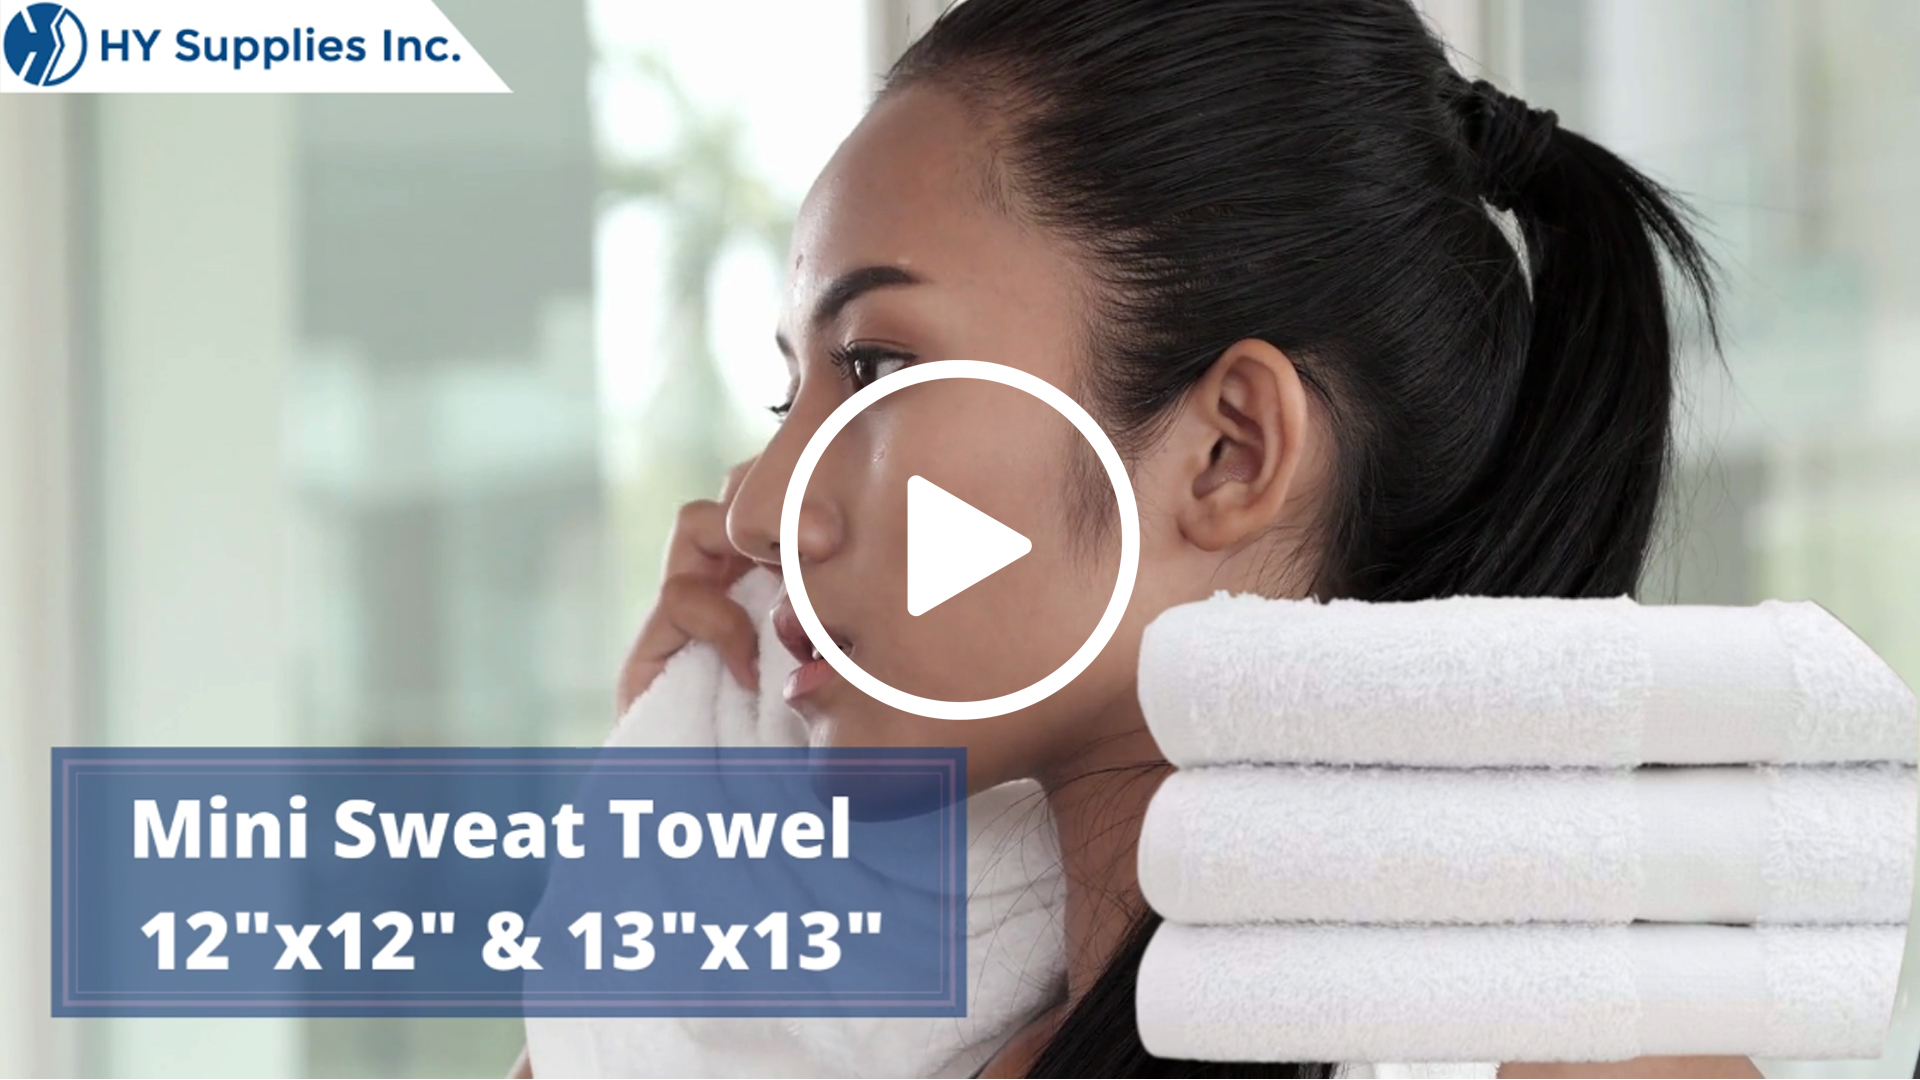 Mini Sweat Towel - 12"x12" & 13"x13"